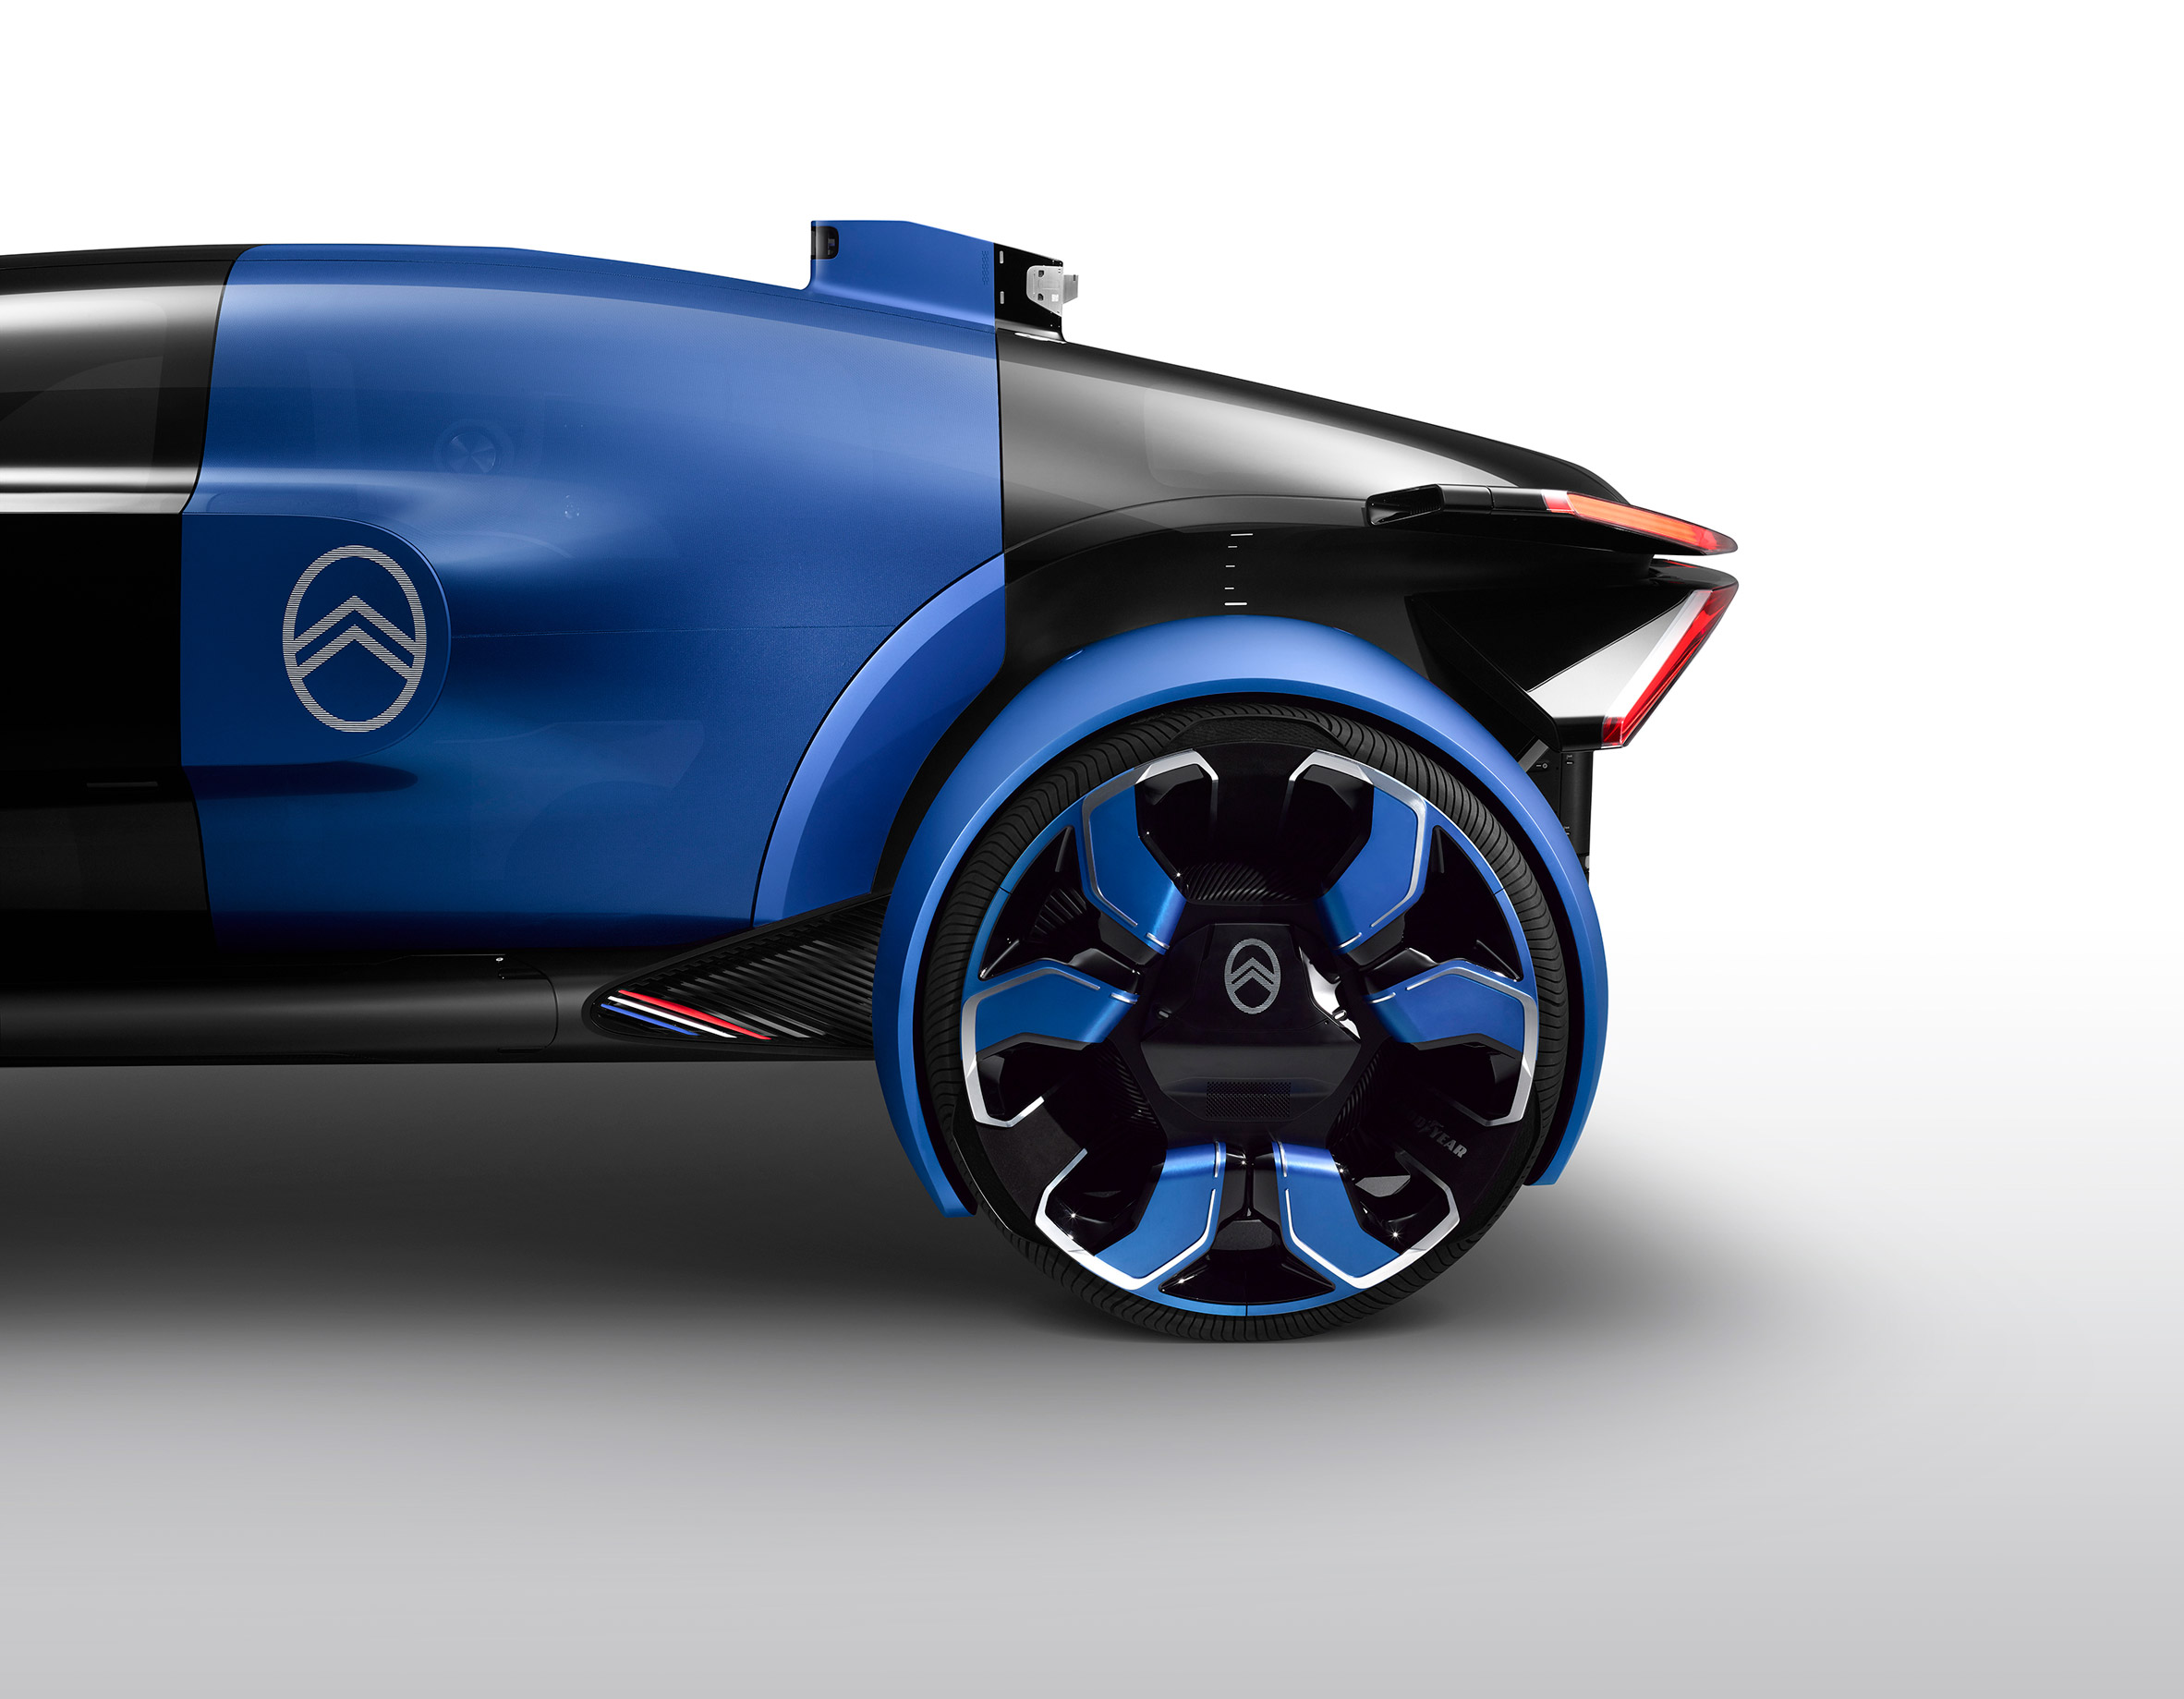 Citroën's 19_19 concept car takes passengers on a "magic carpet ride"